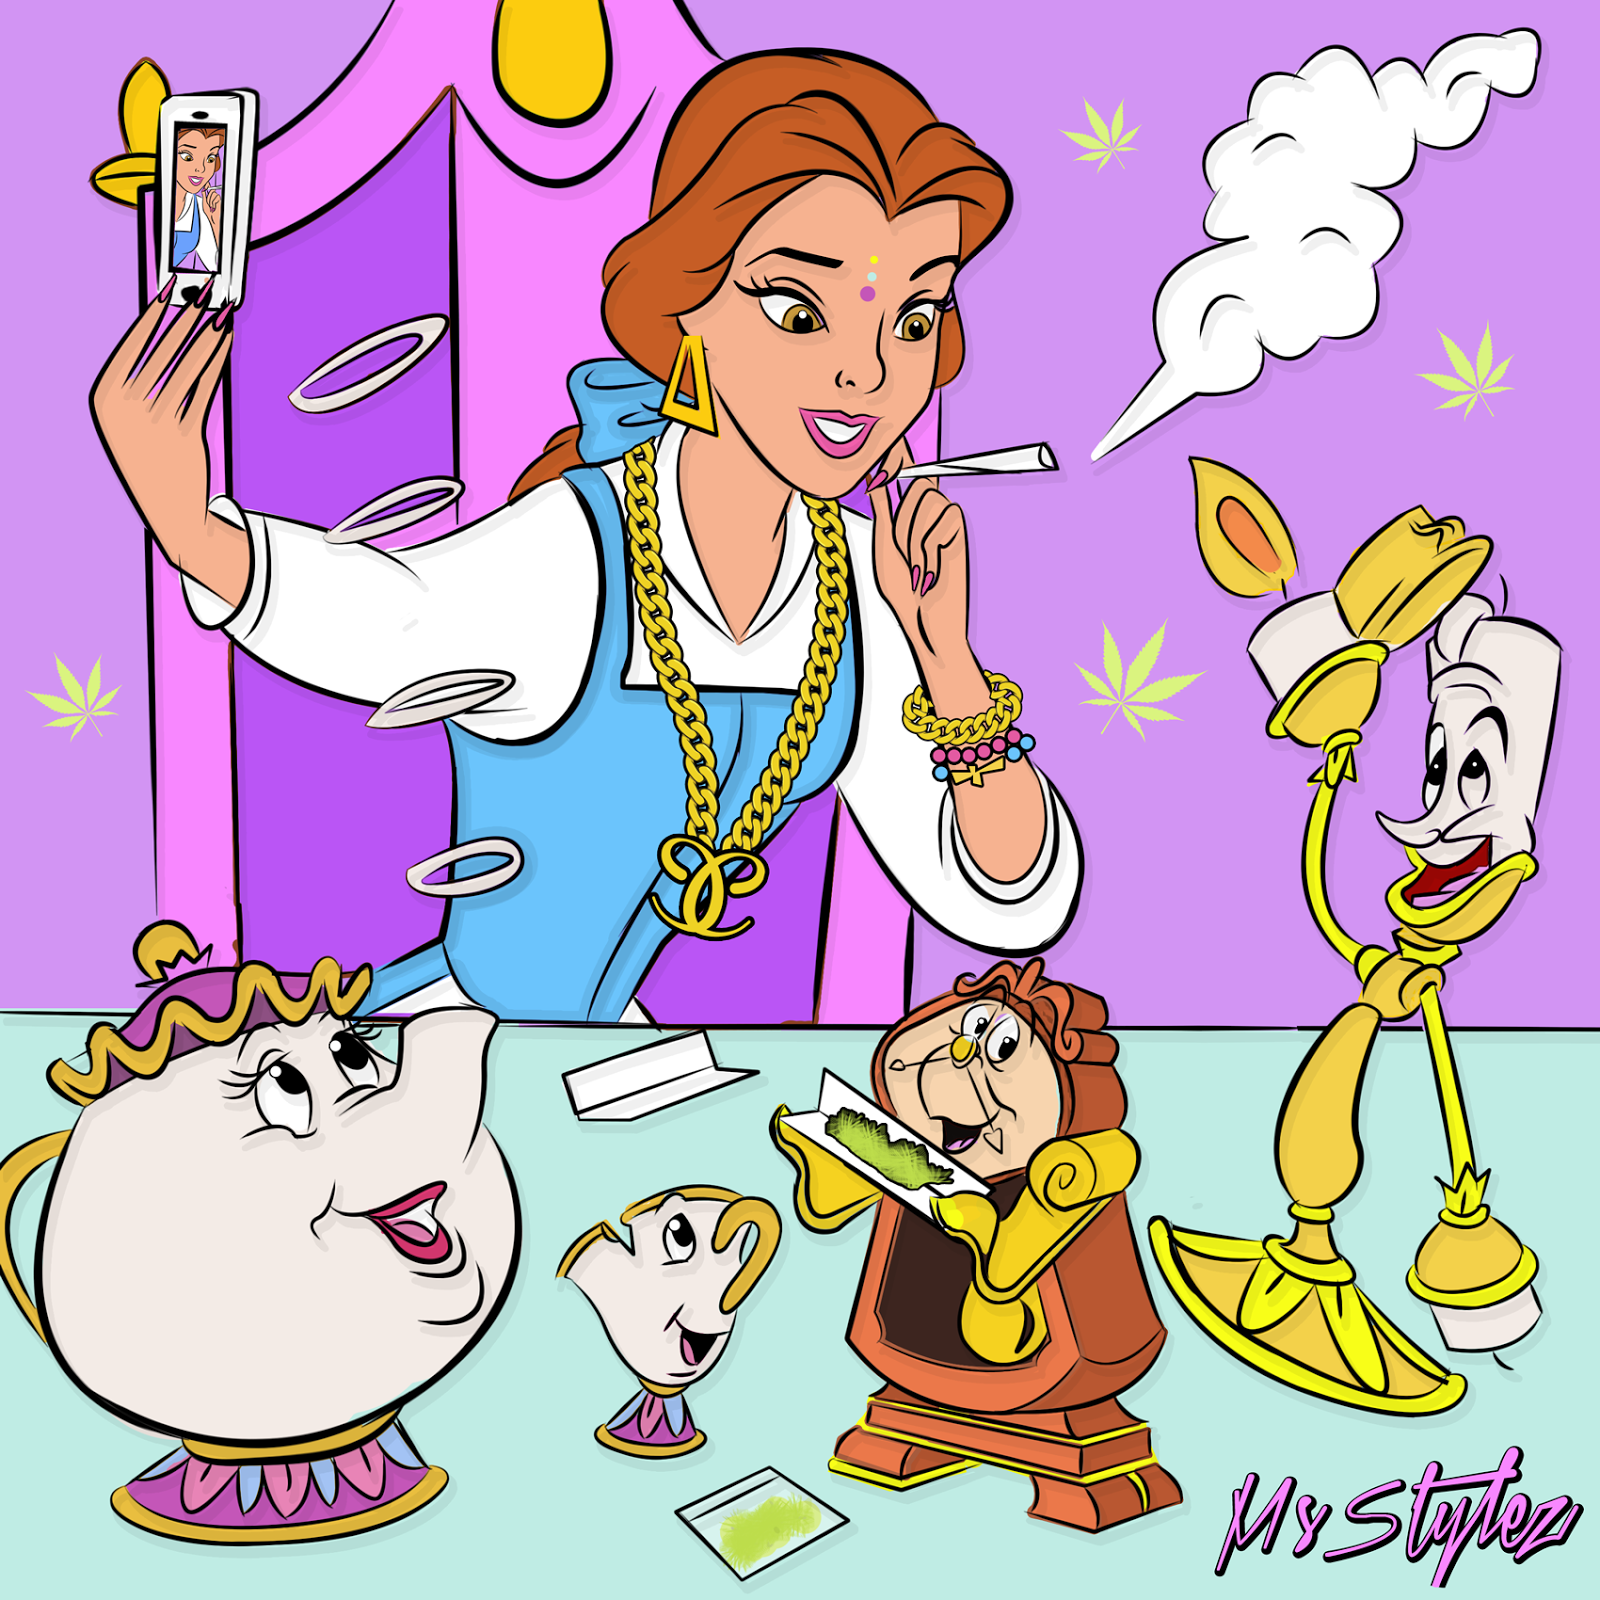 Disney Princess Smoking Weed